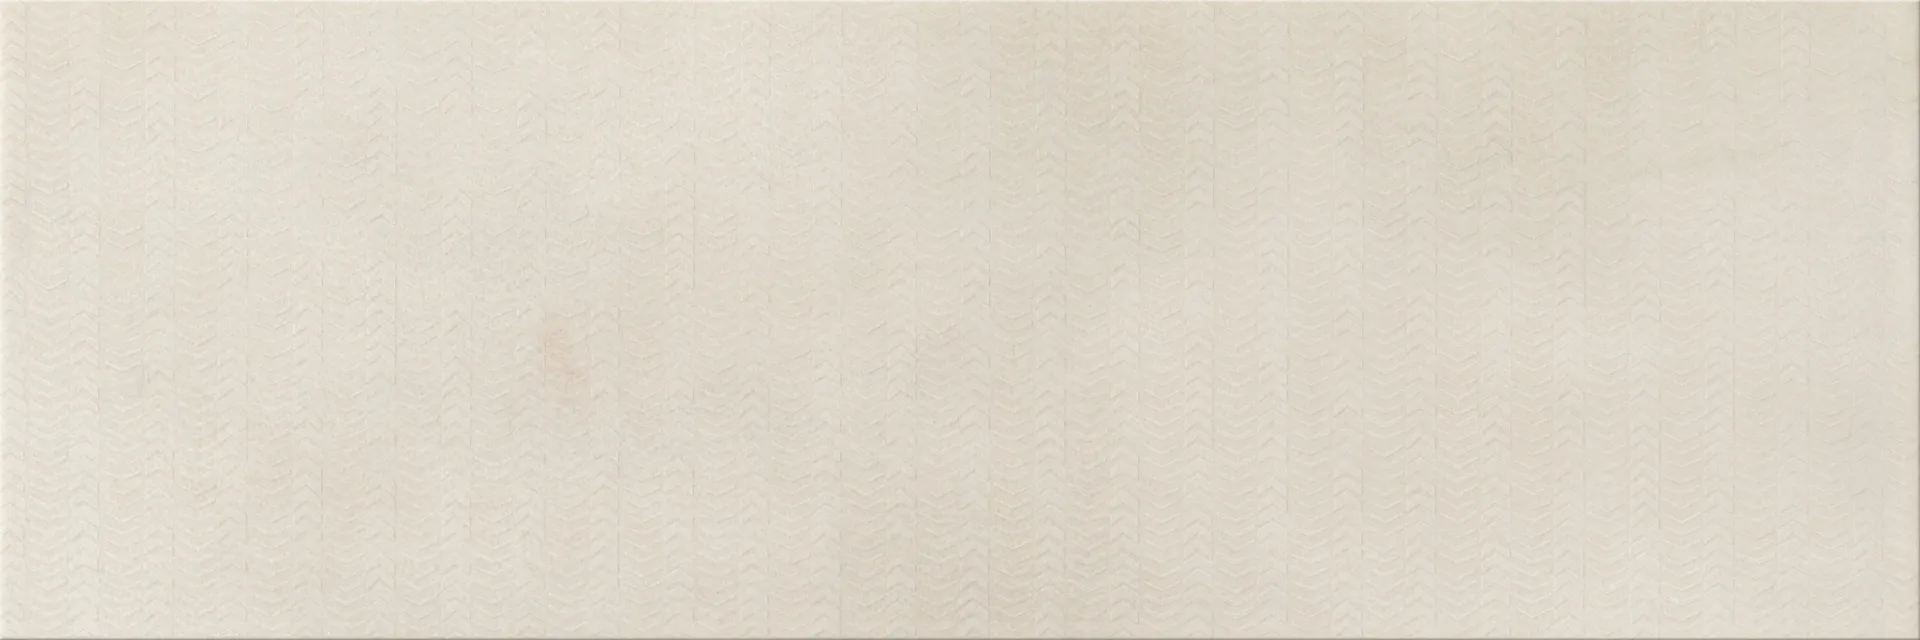 Dekor Safari cream mat inserto 20x60 Cersanit